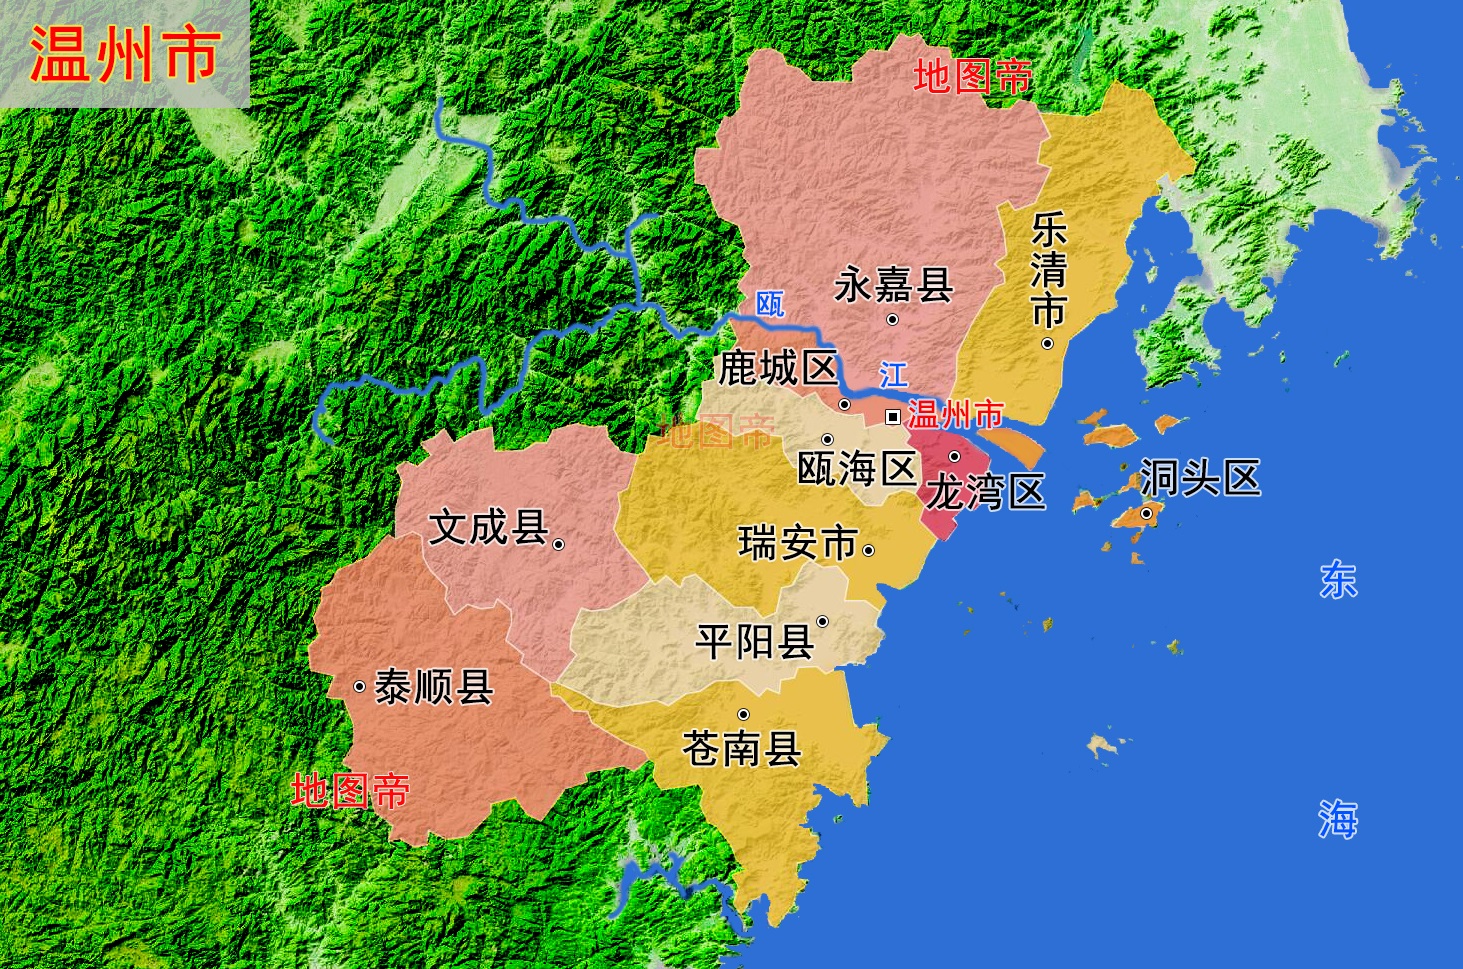 浙江温州5县2市高清地图境内有东南第一山雁荡山